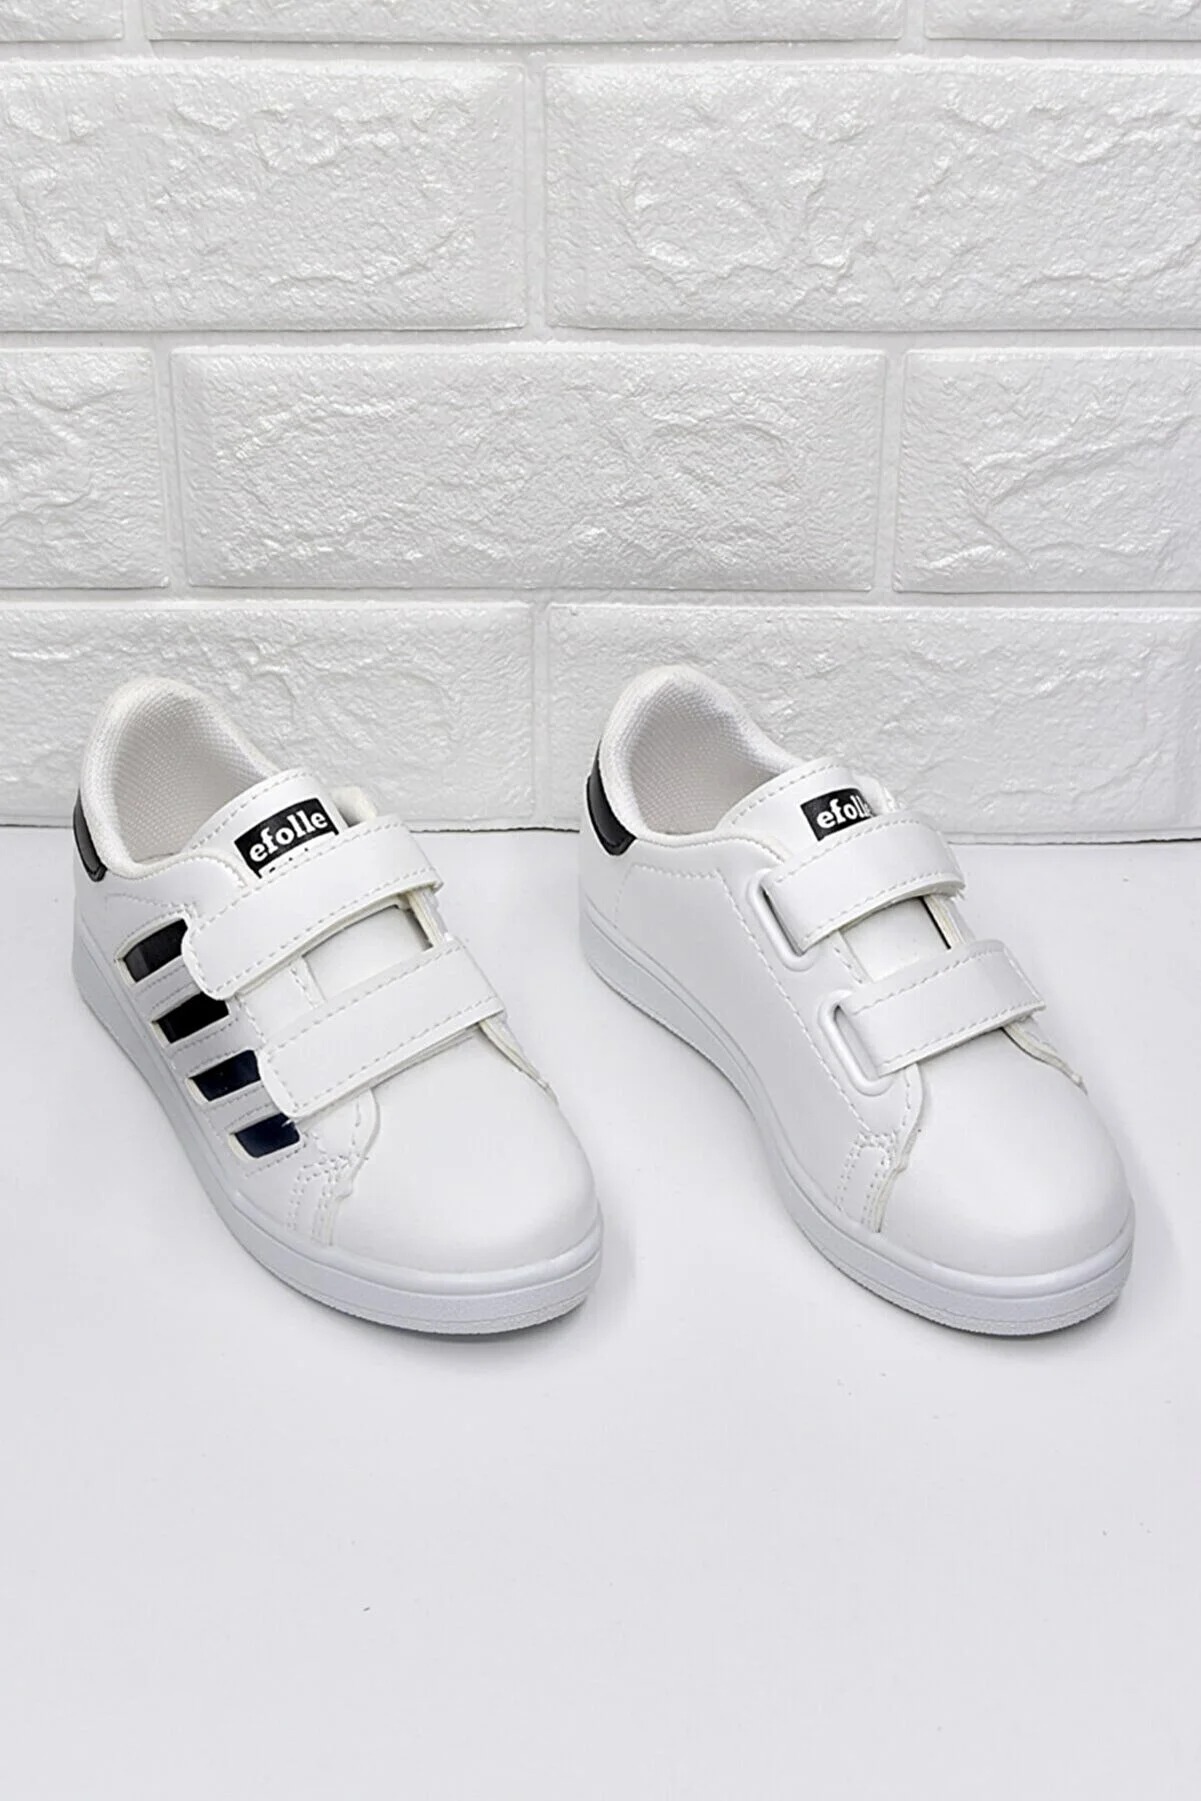 STOCON Kids Kız Çocuk Günlük Spor Ayakkabı Sneaker STC123